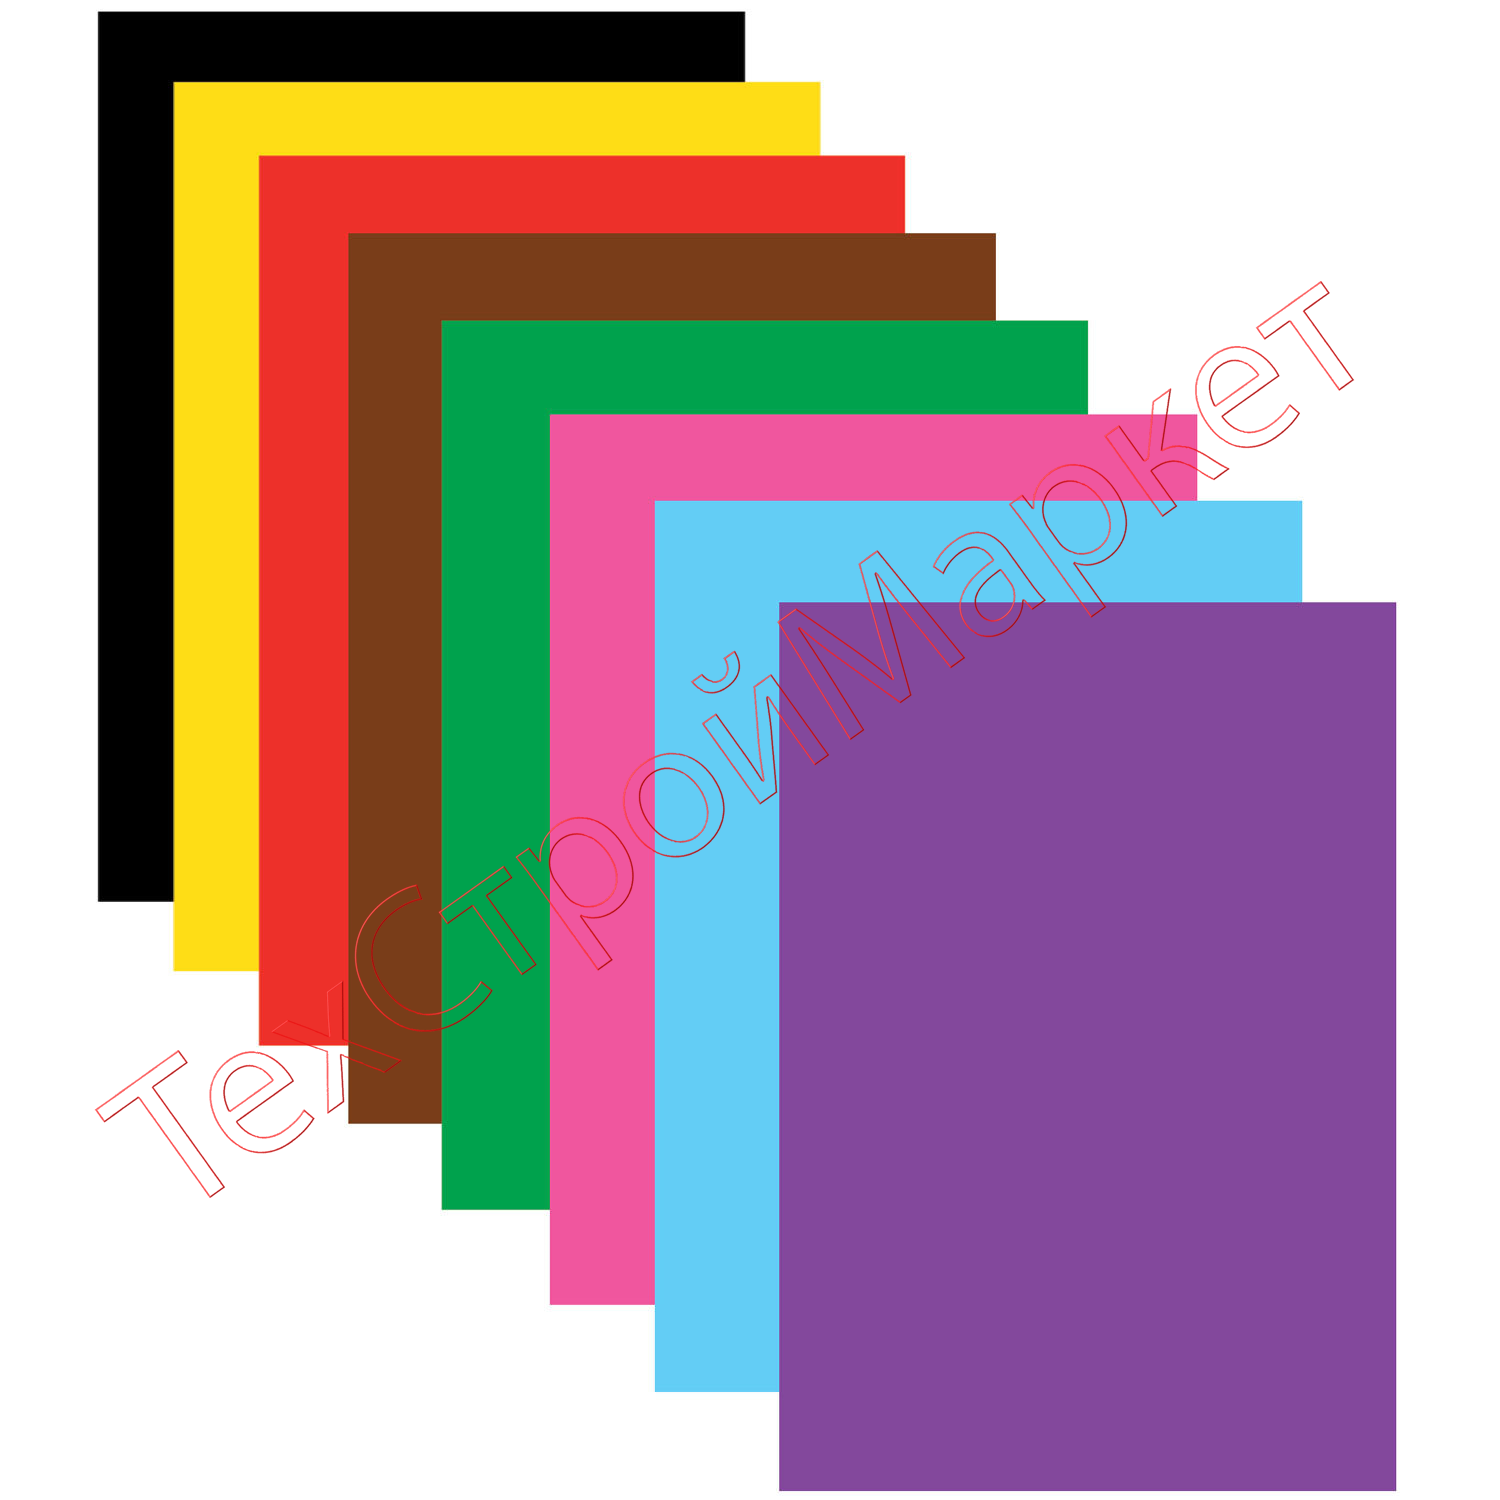 Цветная бумага А4 офсетная, 16 листов 8 цветов, на скобе, BRAUBERG, 200х275 мм, "Космос", 129919